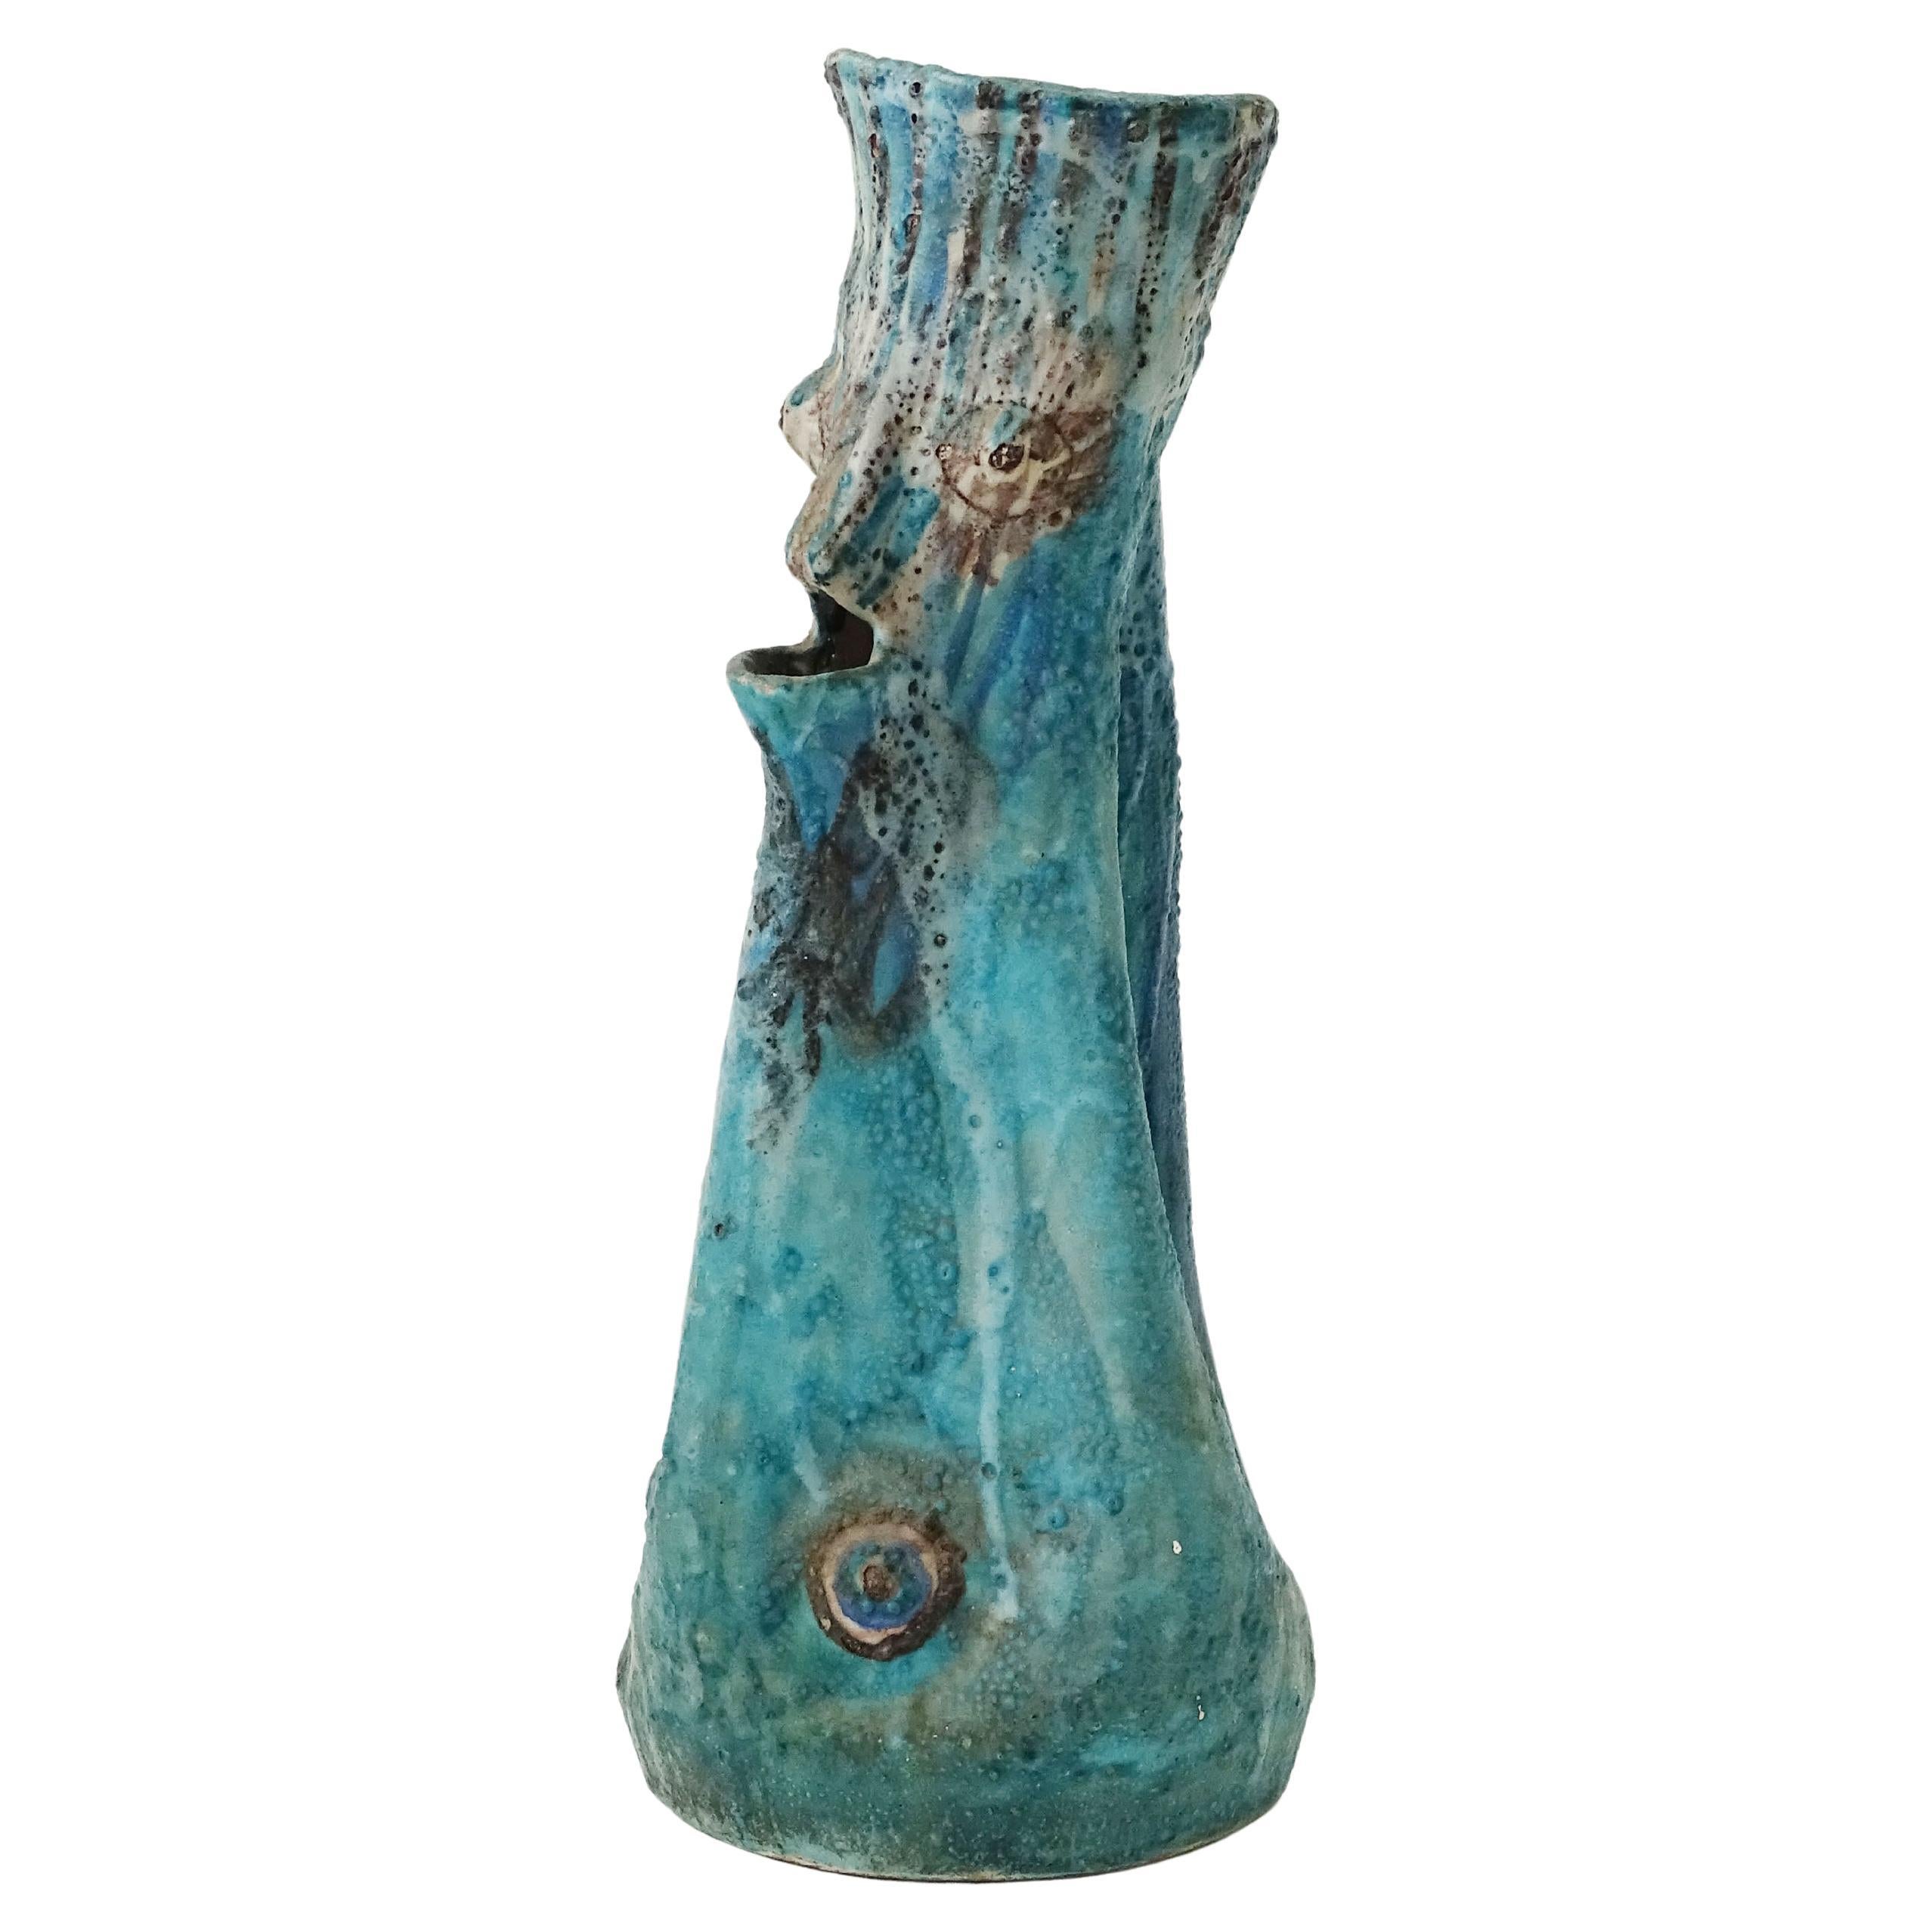 C.A.S Vietri Monumental Grotesque Figural Ceramic Vase. Italy 1950s